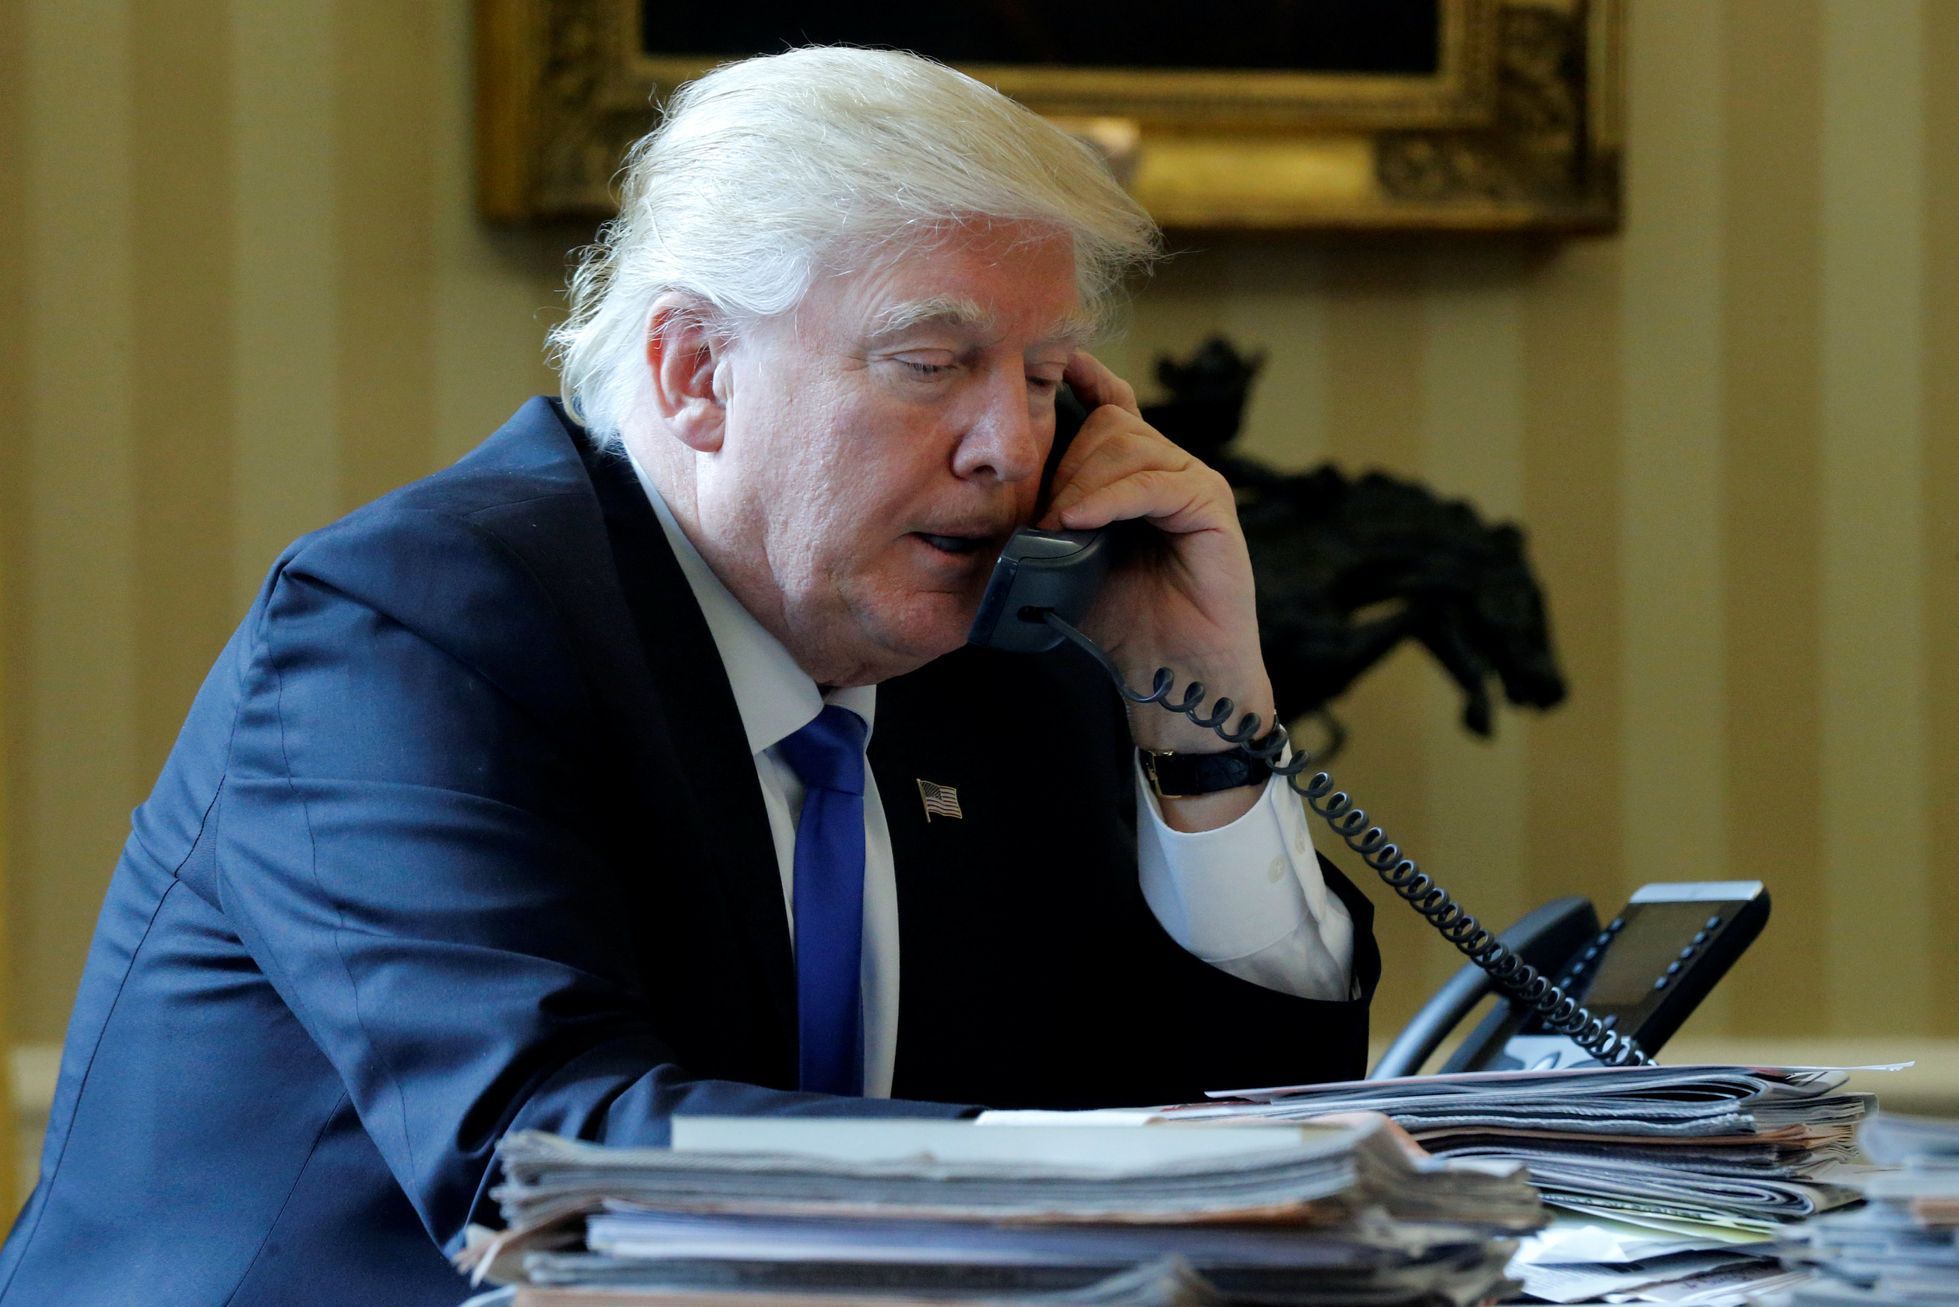 Donald Trump telefonáty